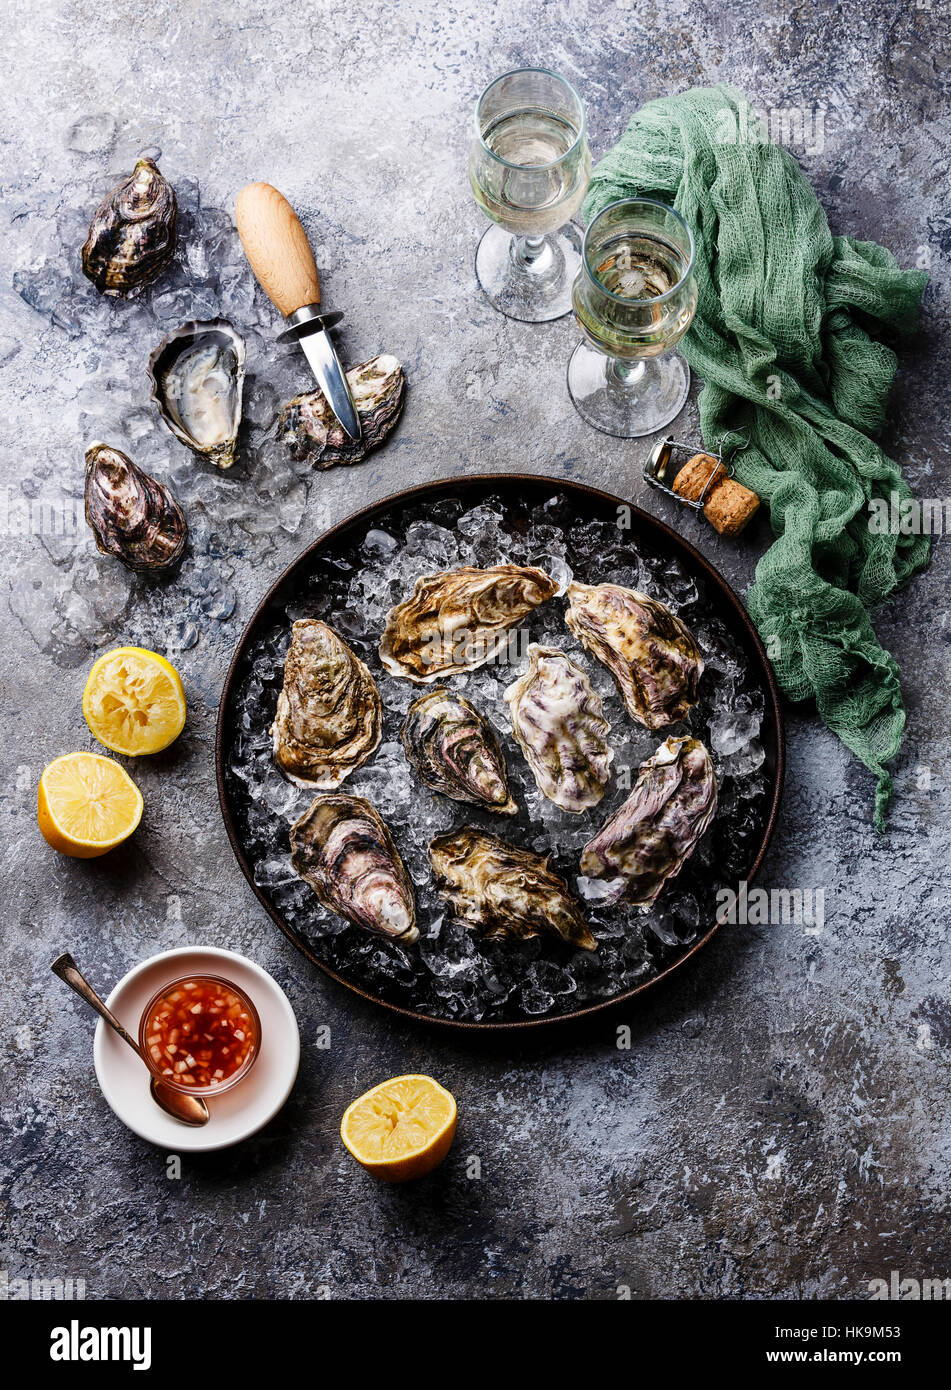 Les huîtres en plaque avec sauce épicée et champagne à stone texture background Banque D'Images